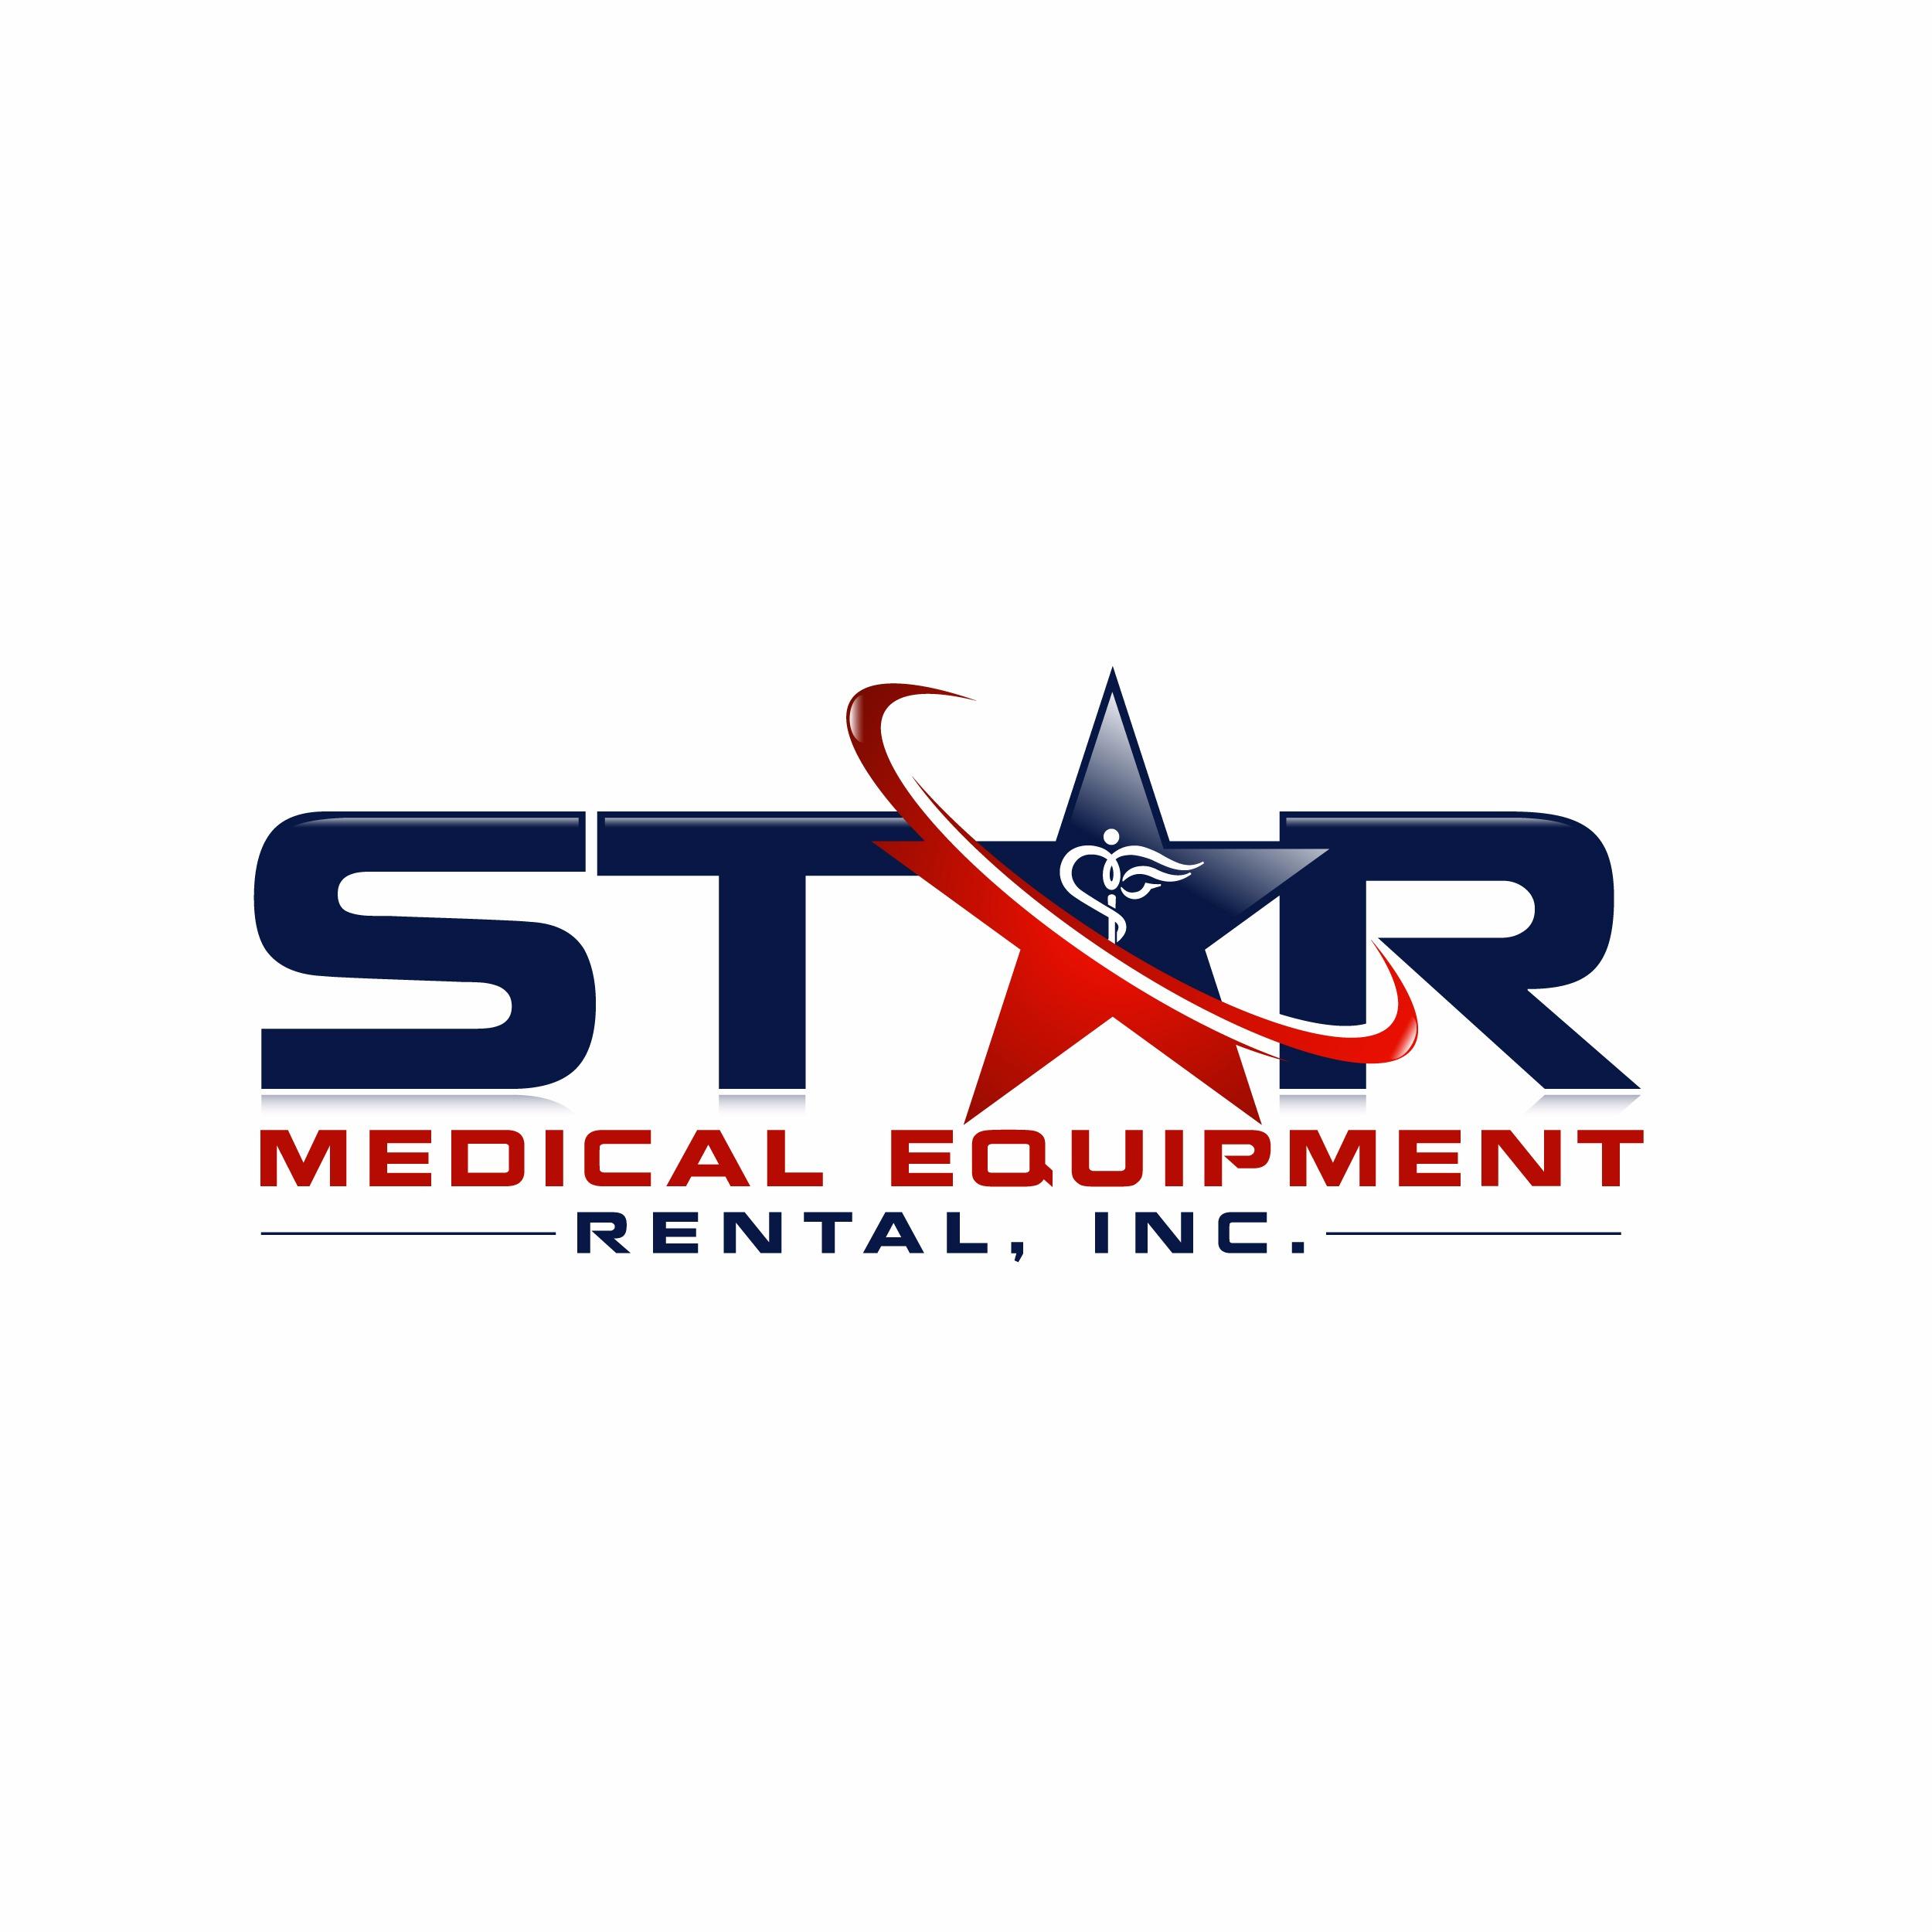 Star Medical Equipment & Rental Coupons near me in Hialeah ...